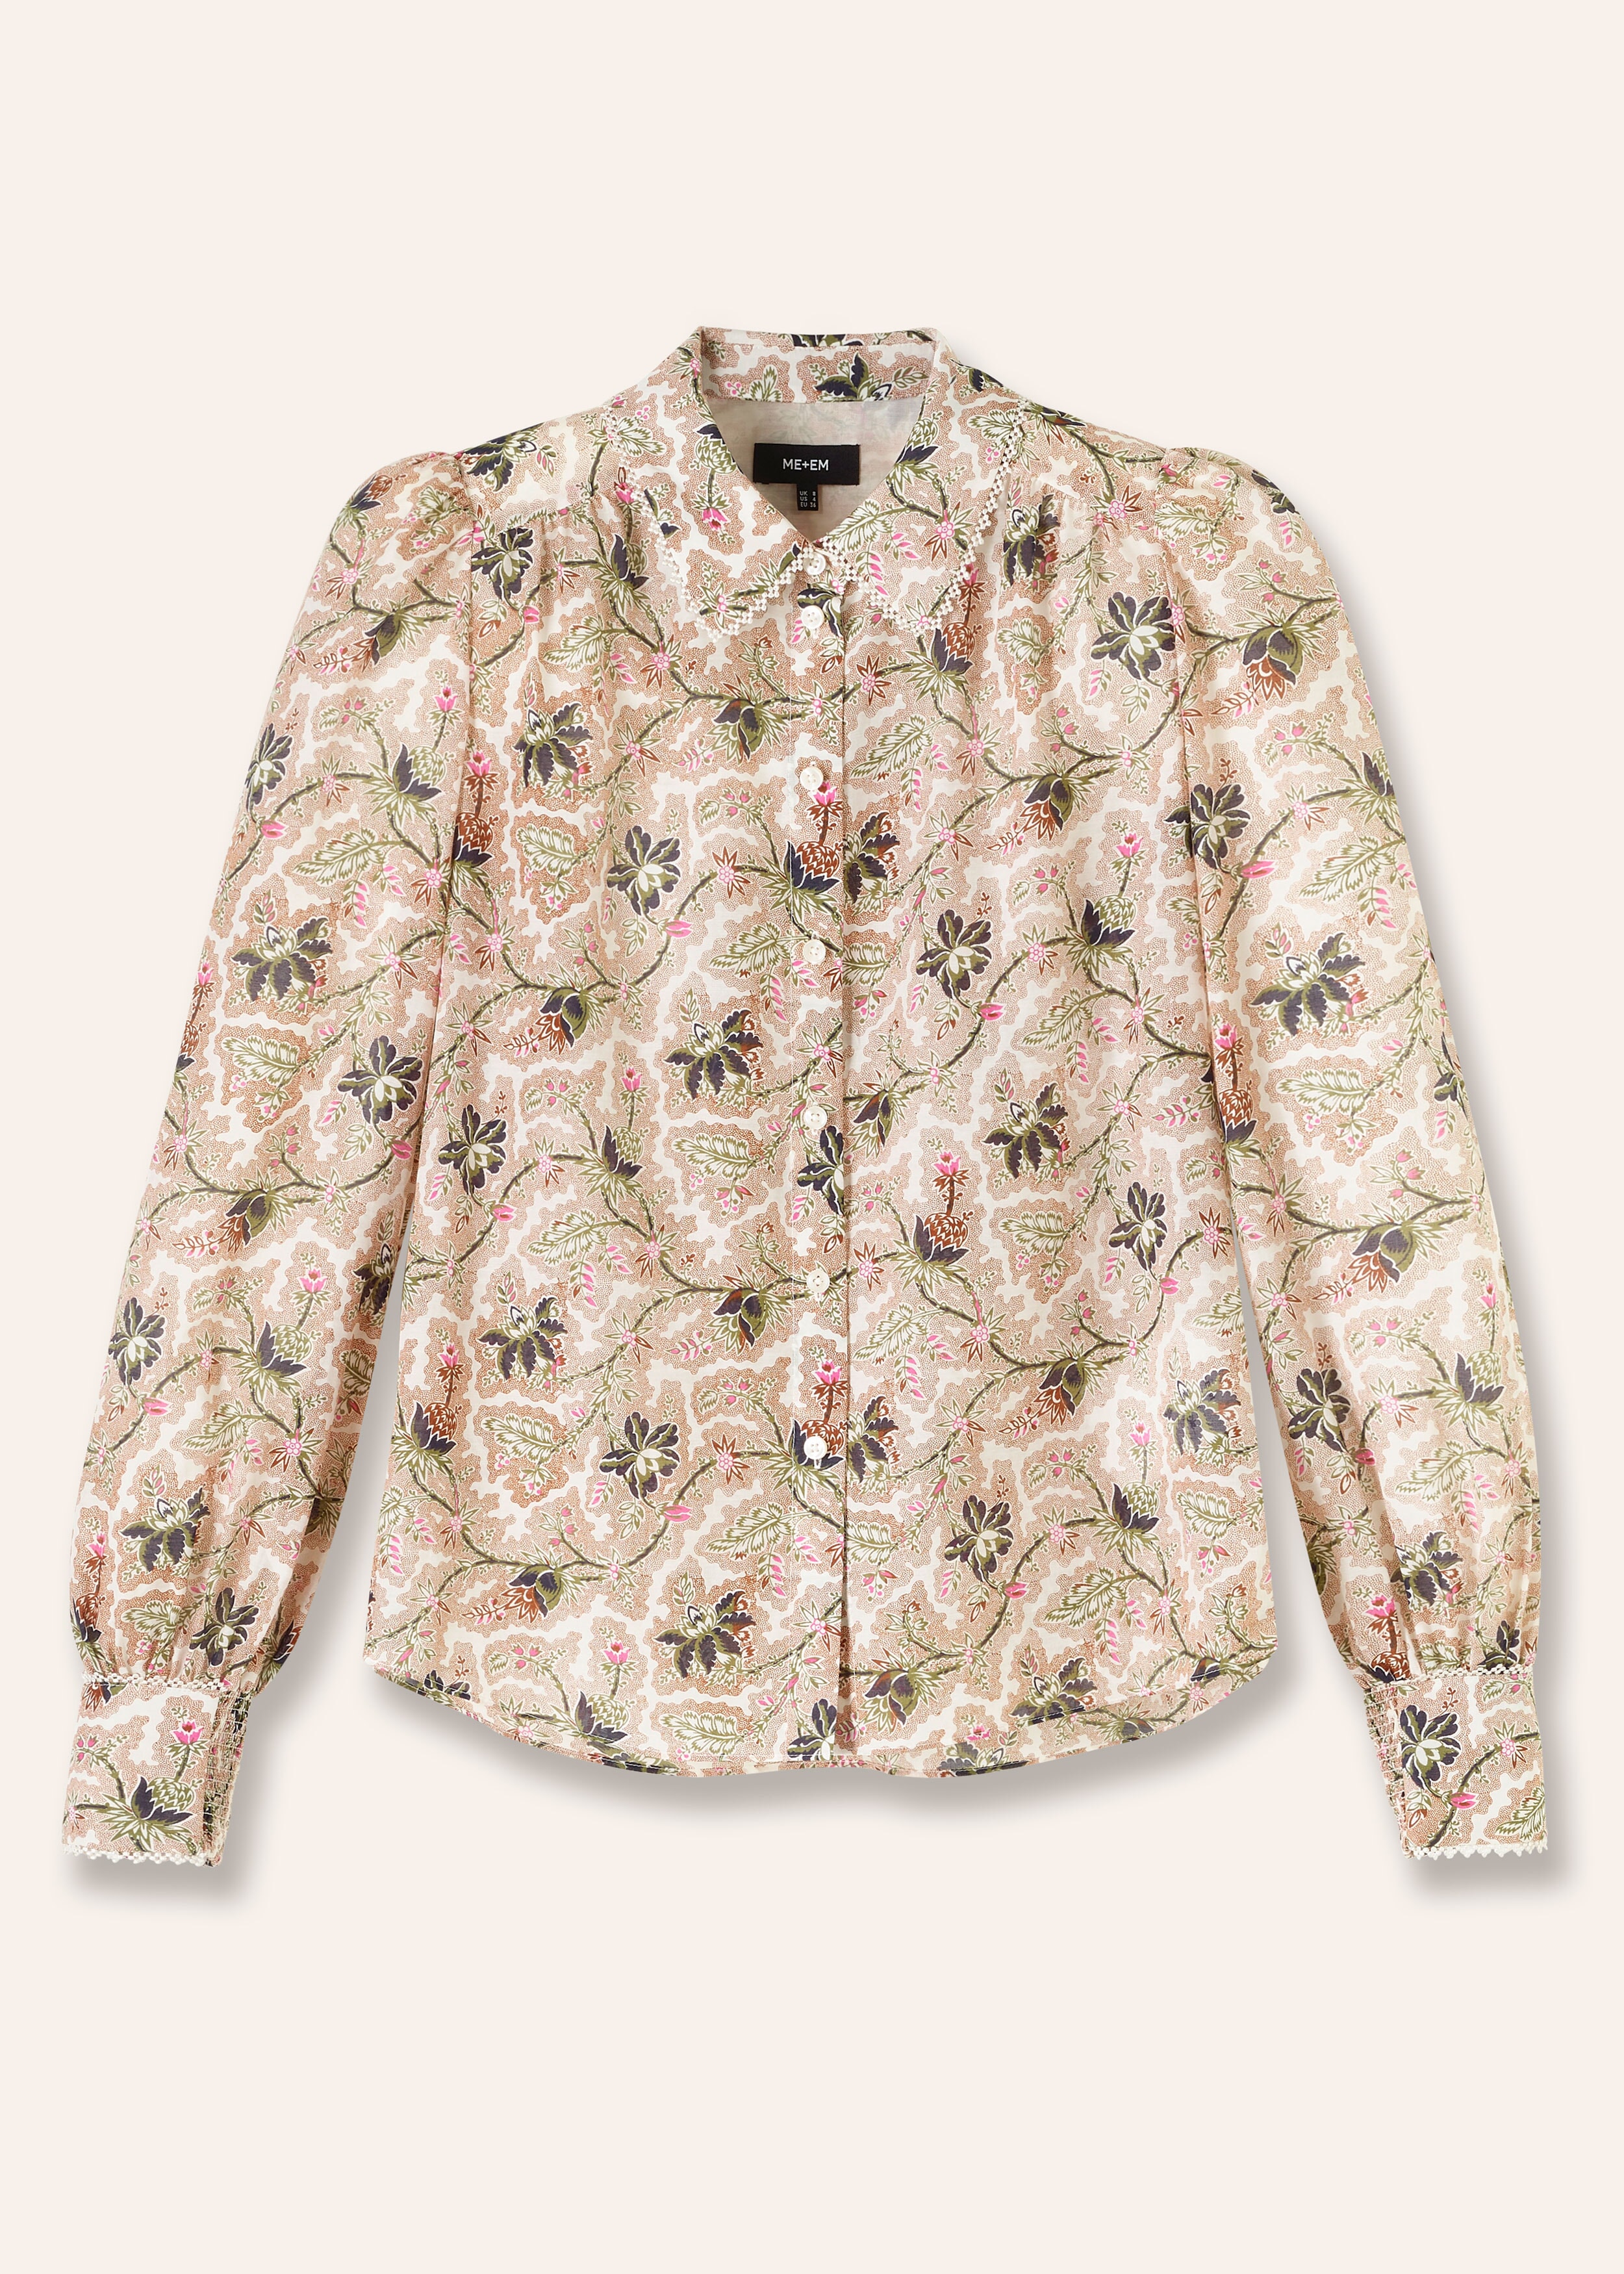 Silk Cotton Soft Bloom Print Shirt Light Cream/Brown/Green/Pink